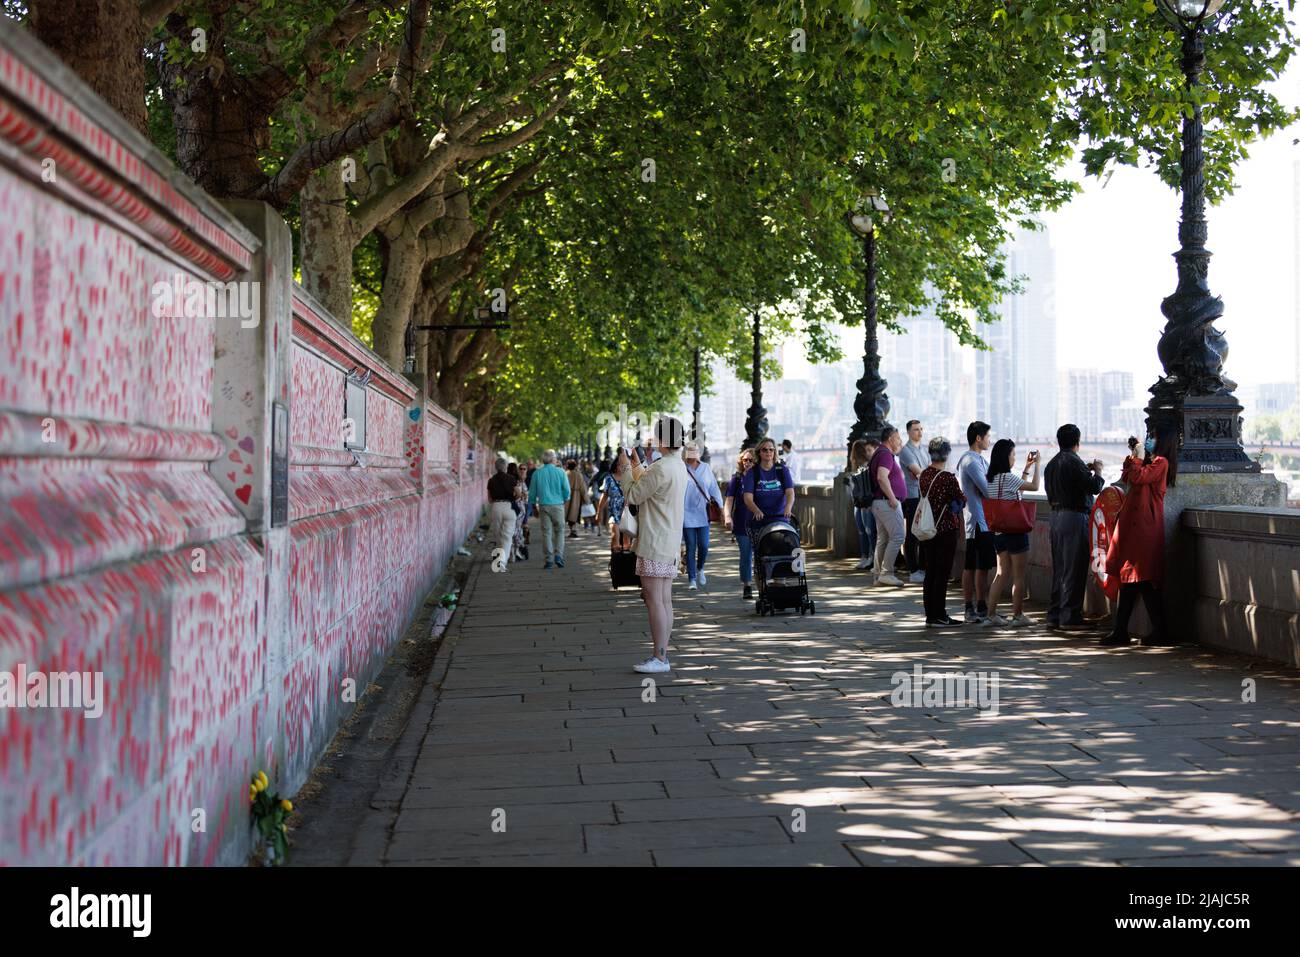 150.000 Corazones que representan vidas perdidas por coronavirus en la línea del Reino Unido El muro conmemorativo de COVID en Londres, Lambeth Walk, Westminster Foto de stock